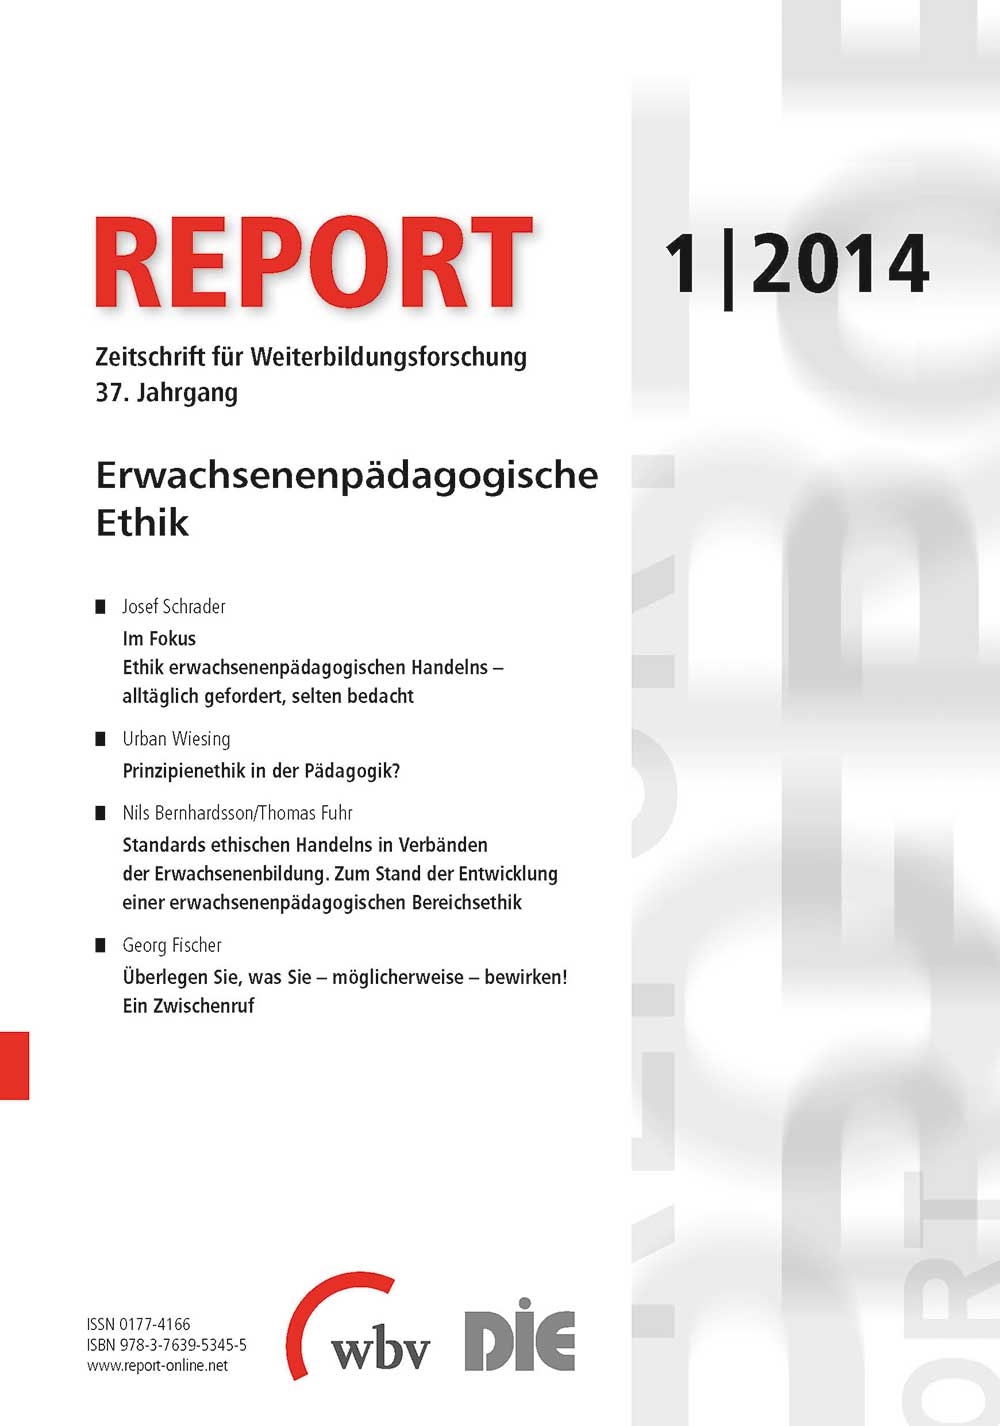 REPORT - Zeitschrift für Weiterbildungsforschung 01/2014